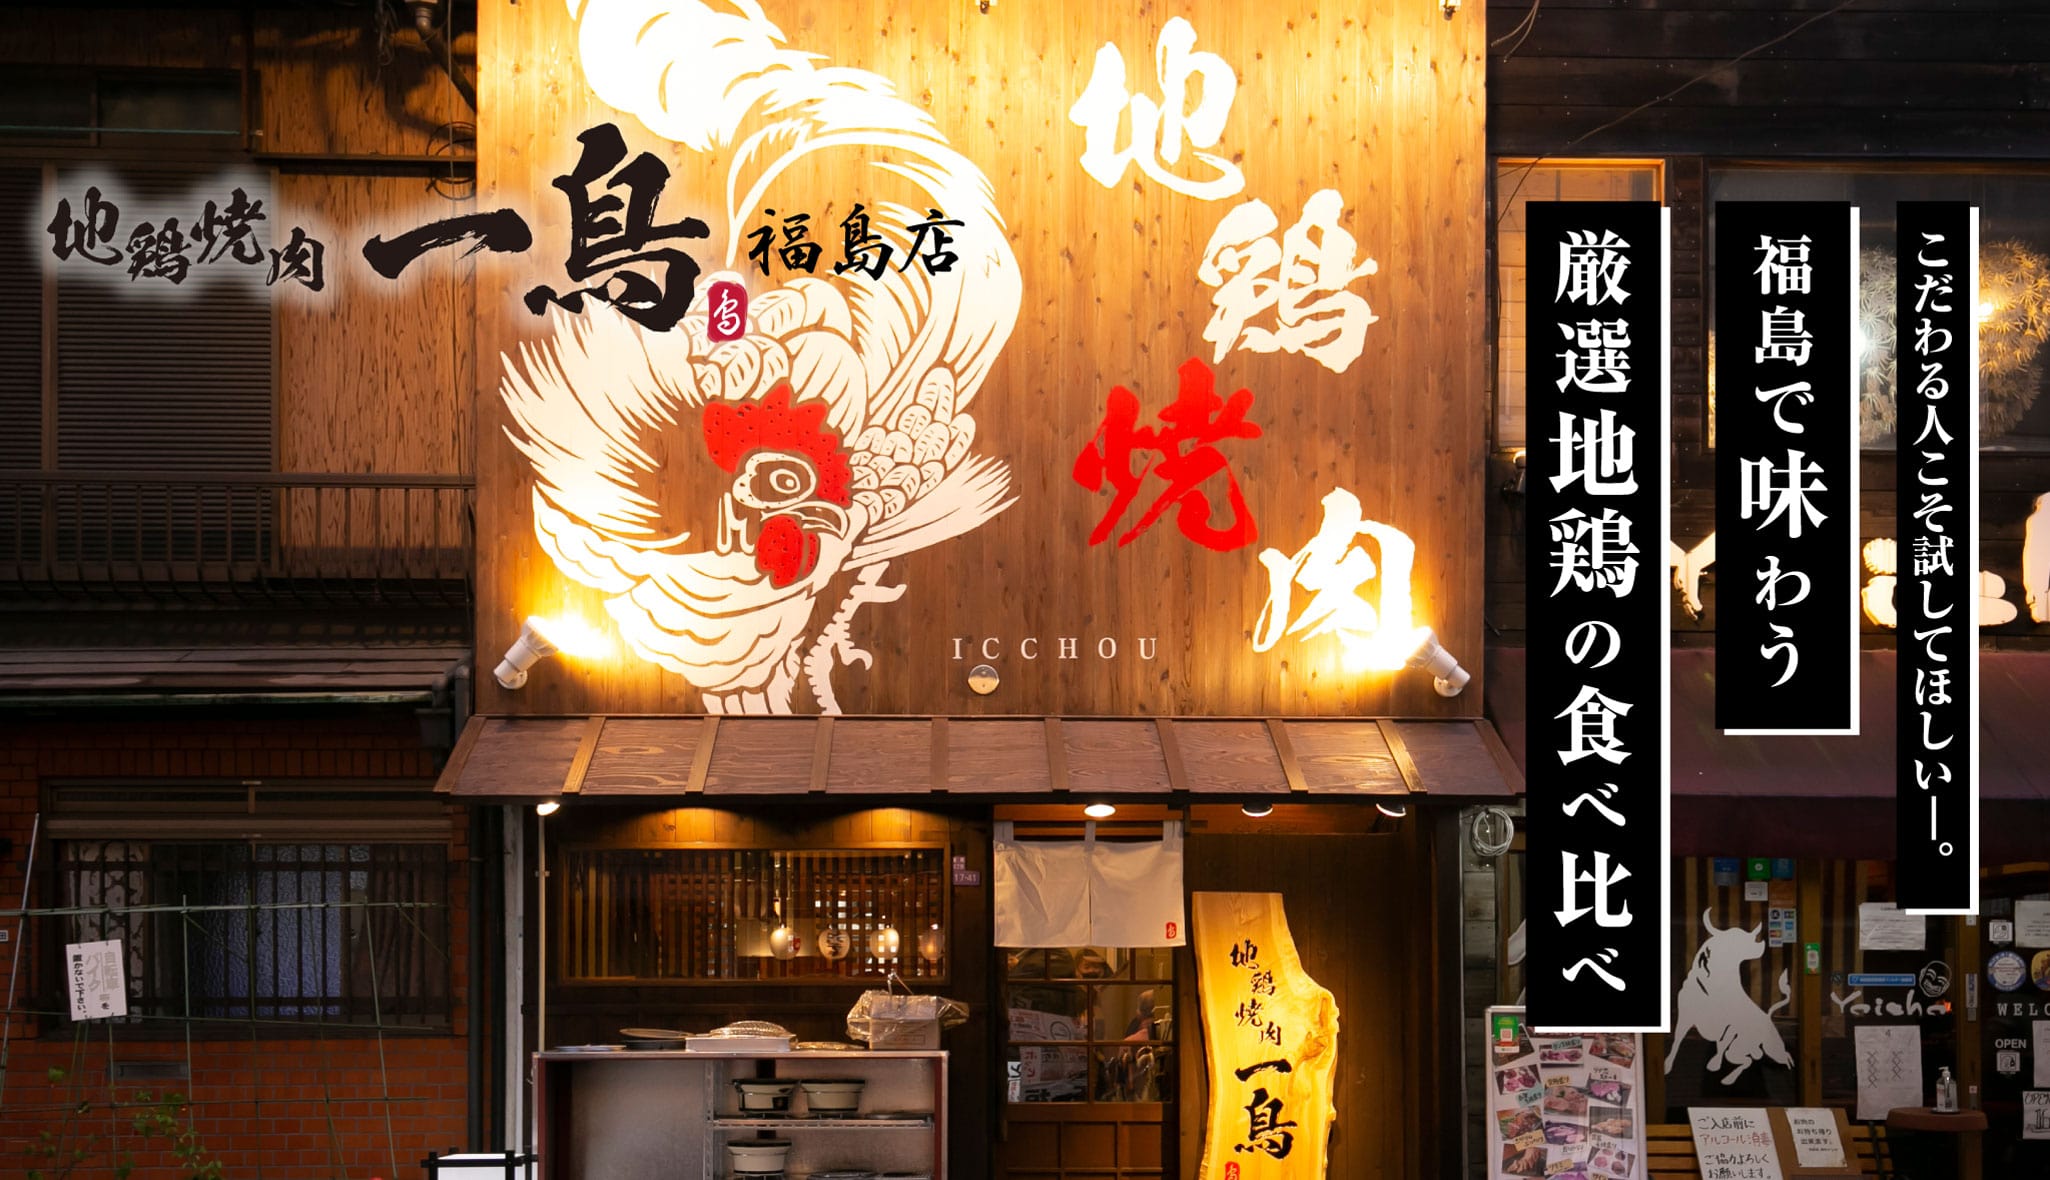 地鶏焼肉 一鳥 福島店 こだわる人こそ試してほしい。福島で味わう厳選地鶏の食べ比べ